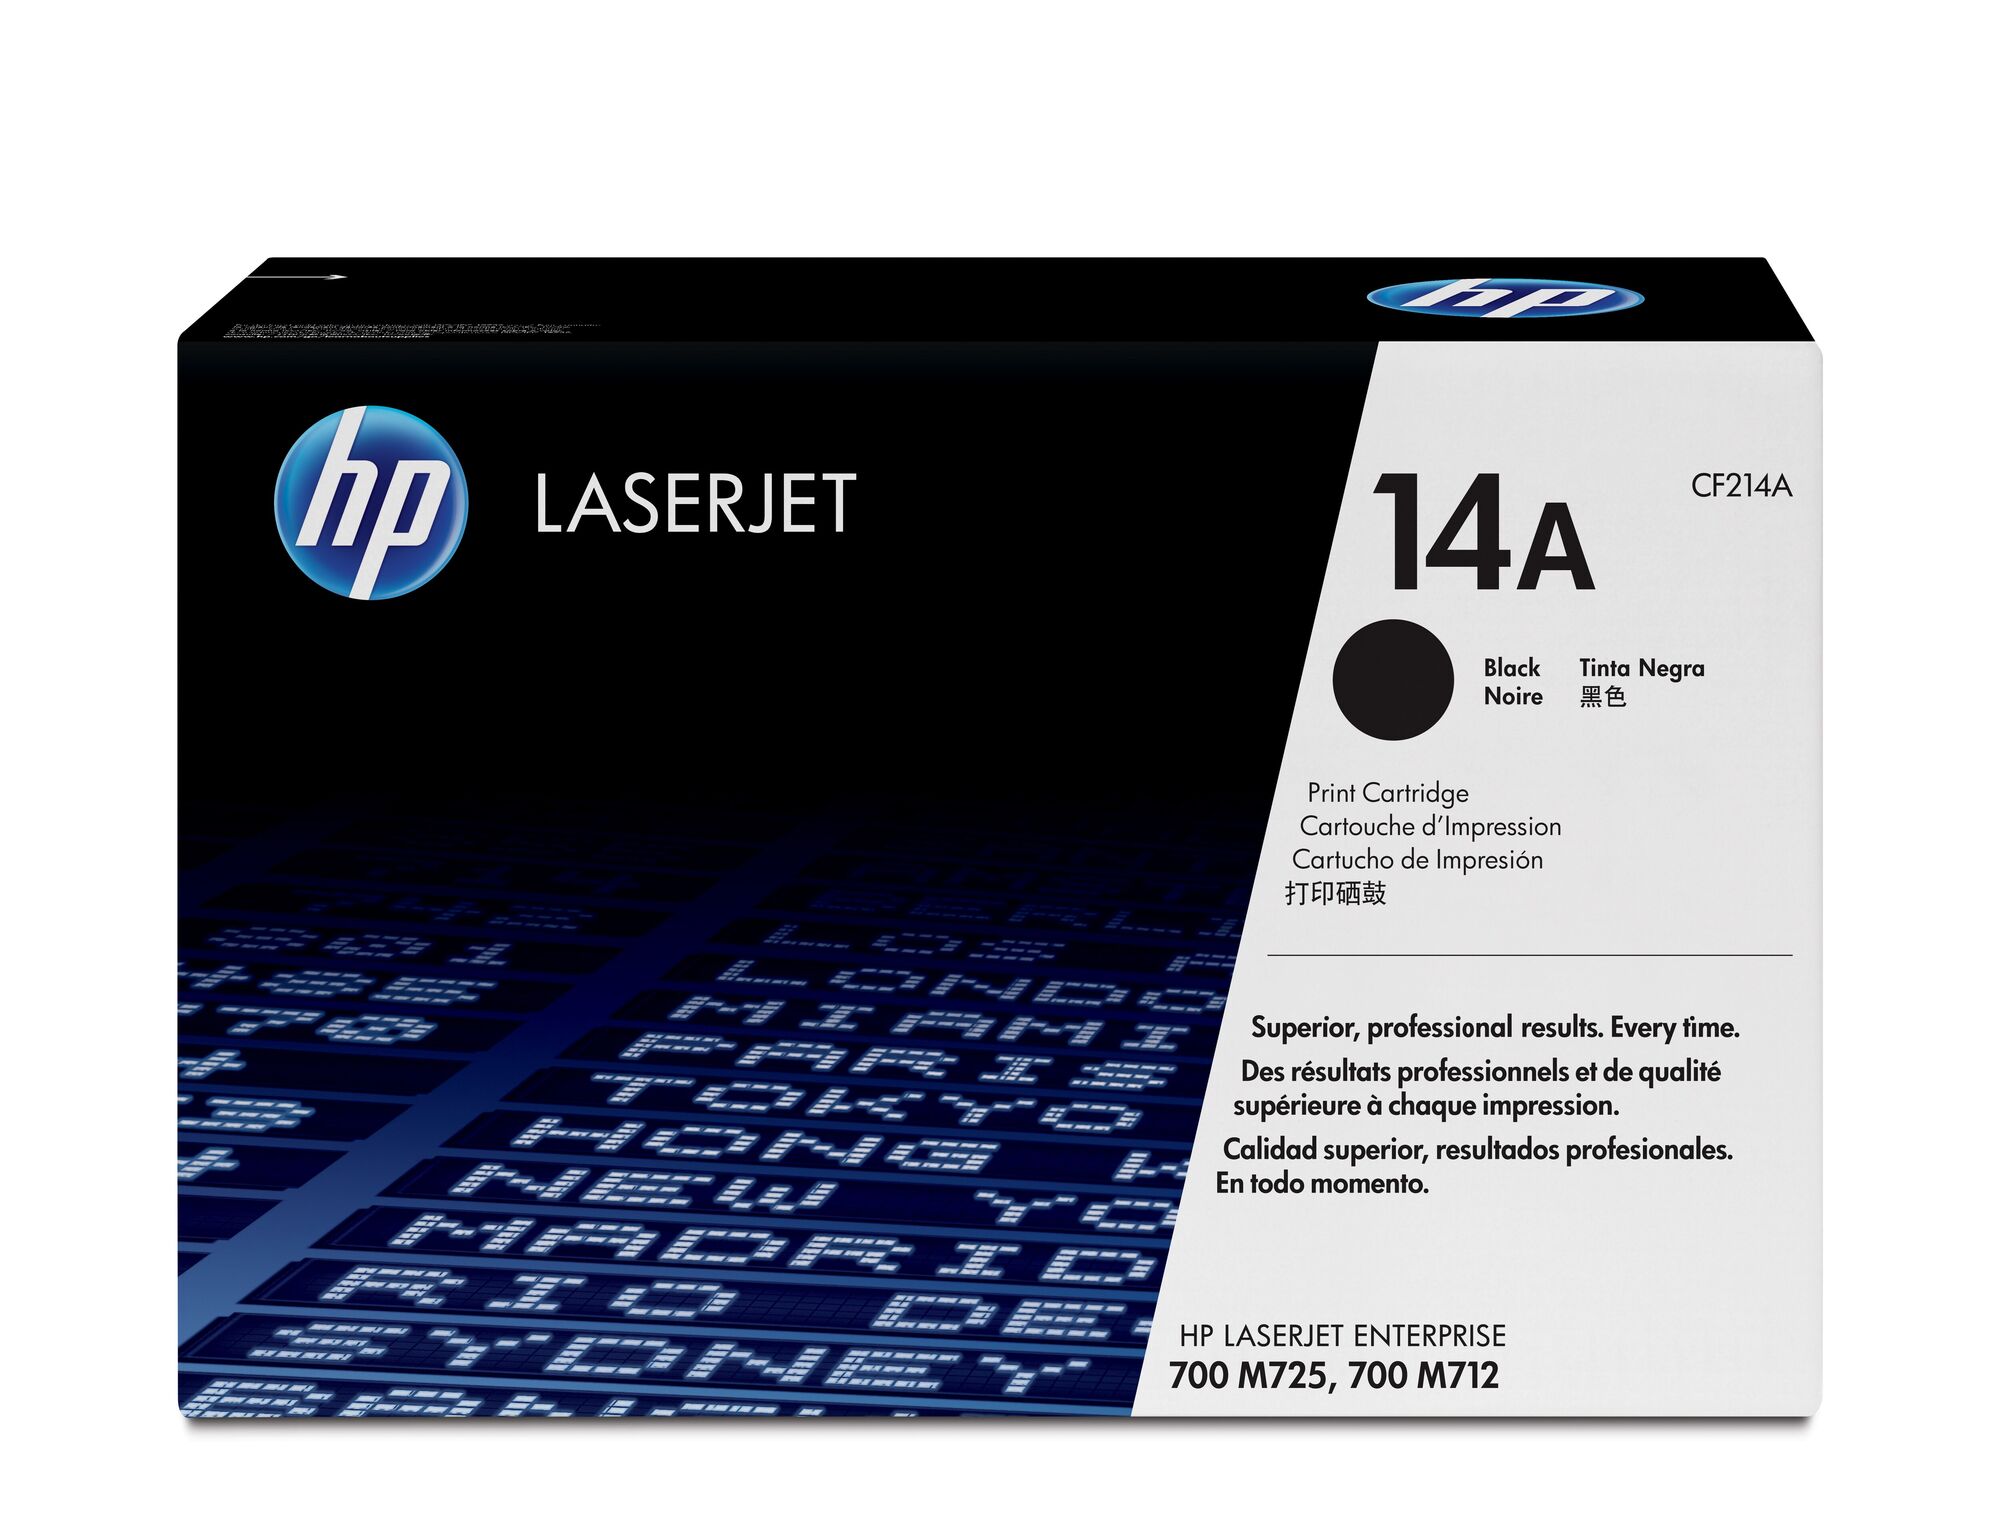 Картридж для печати HP Картридж HP CF214A вид печати лазерный, цвет Черный, емкость